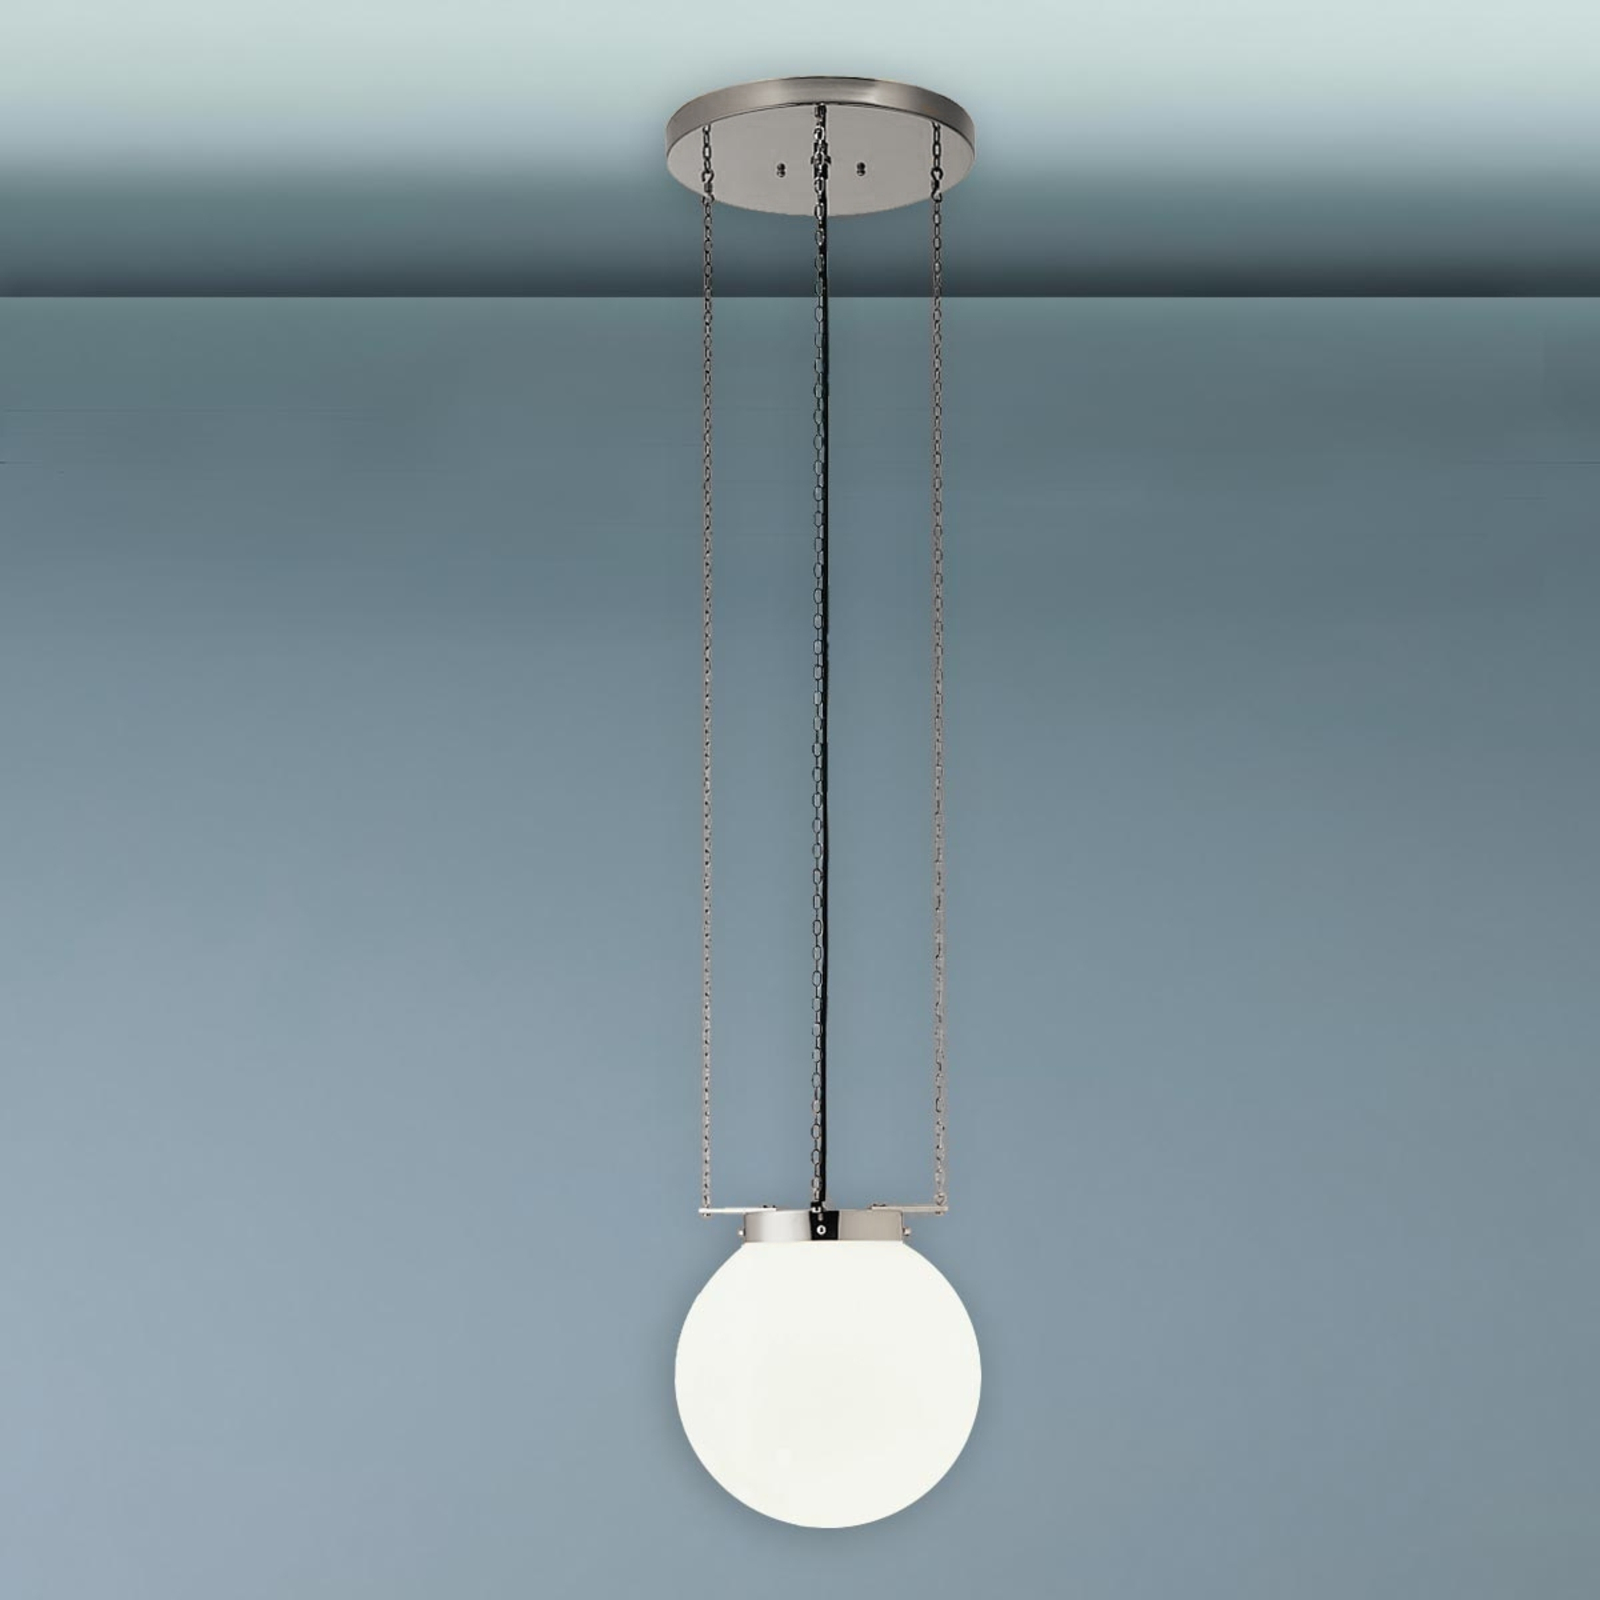 Hanging light in Bauhaus style, nickel, 25 cm